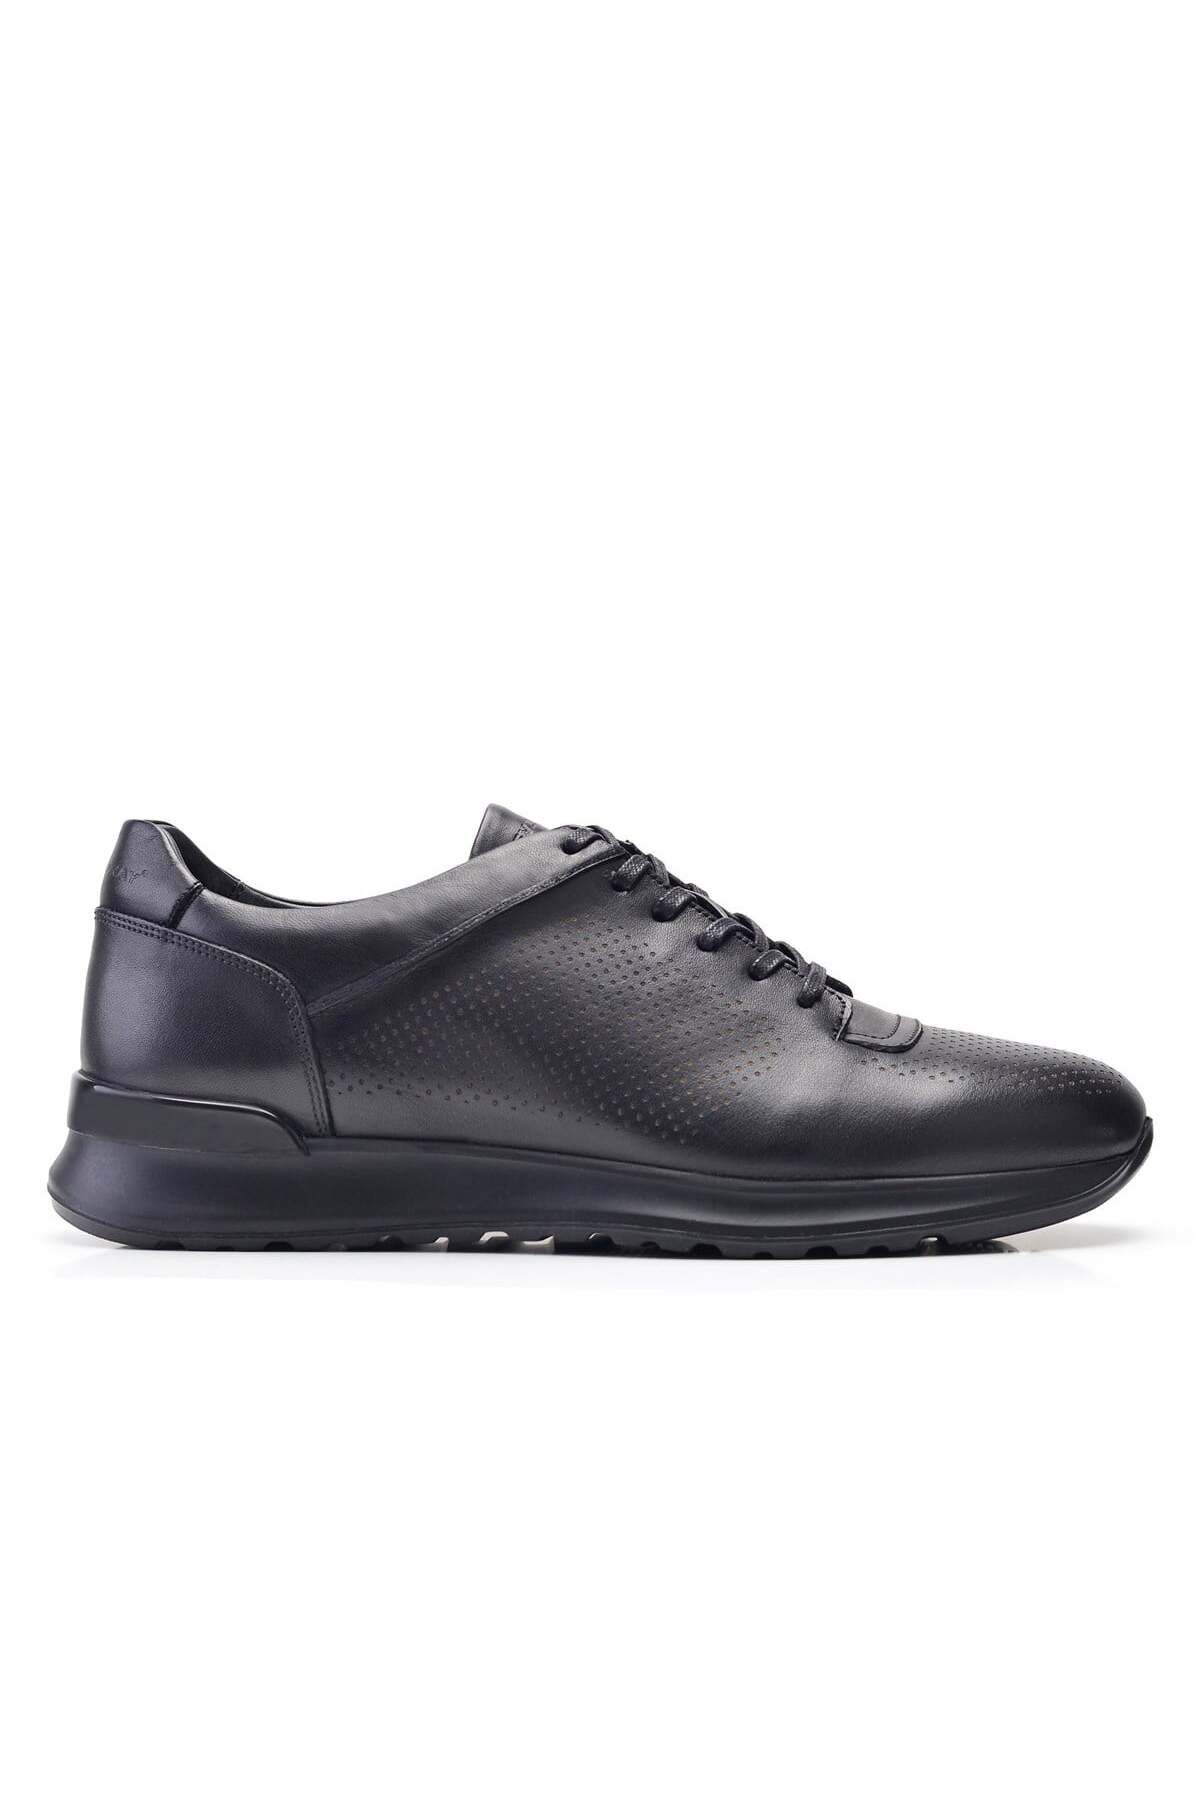 Nevzat Onay Siyah Baskı Sneaker Erkek Ayakkabı -11886-